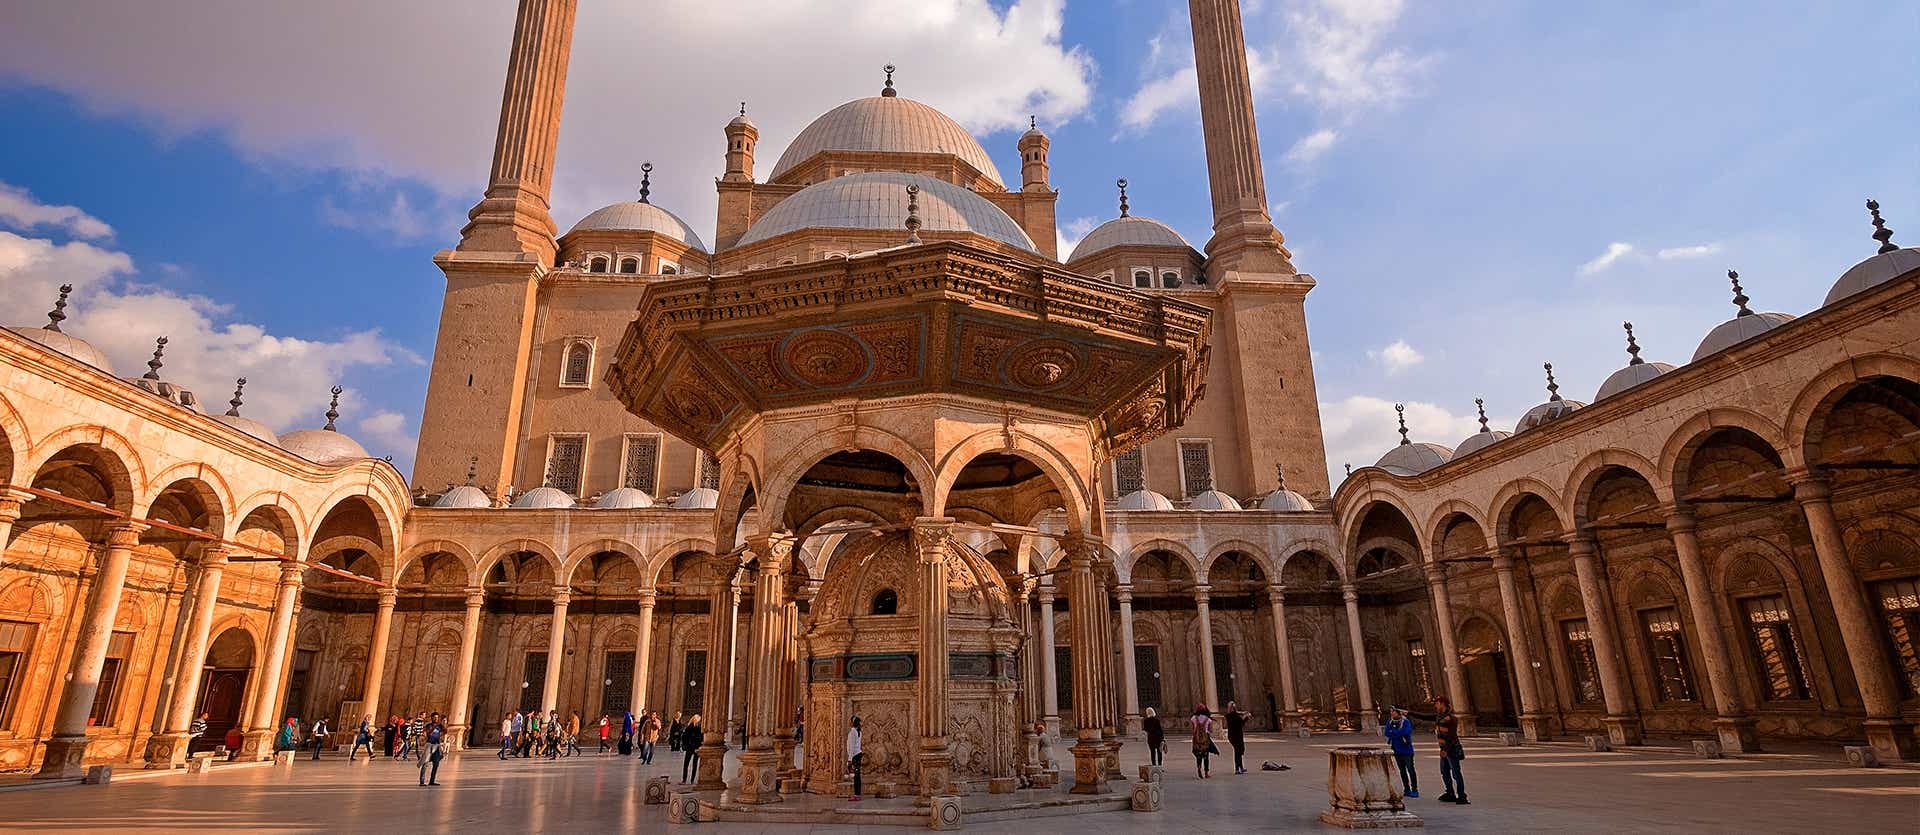 Mezquita de alabastro <span class="iconos separador"> El Cairo